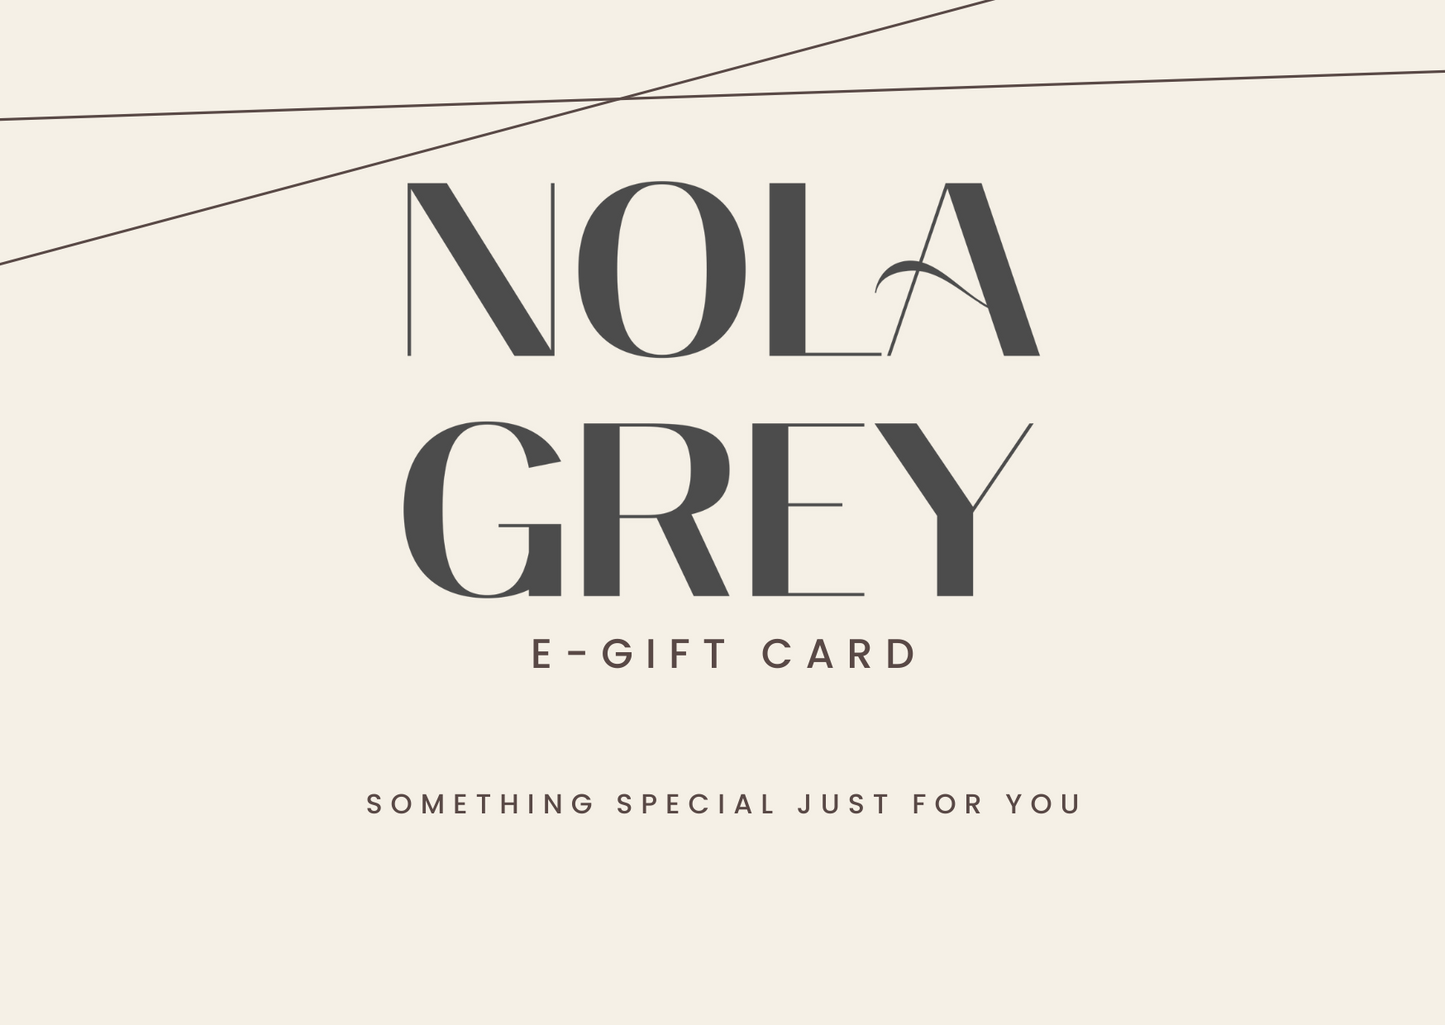 NOLA GREY Gift Card